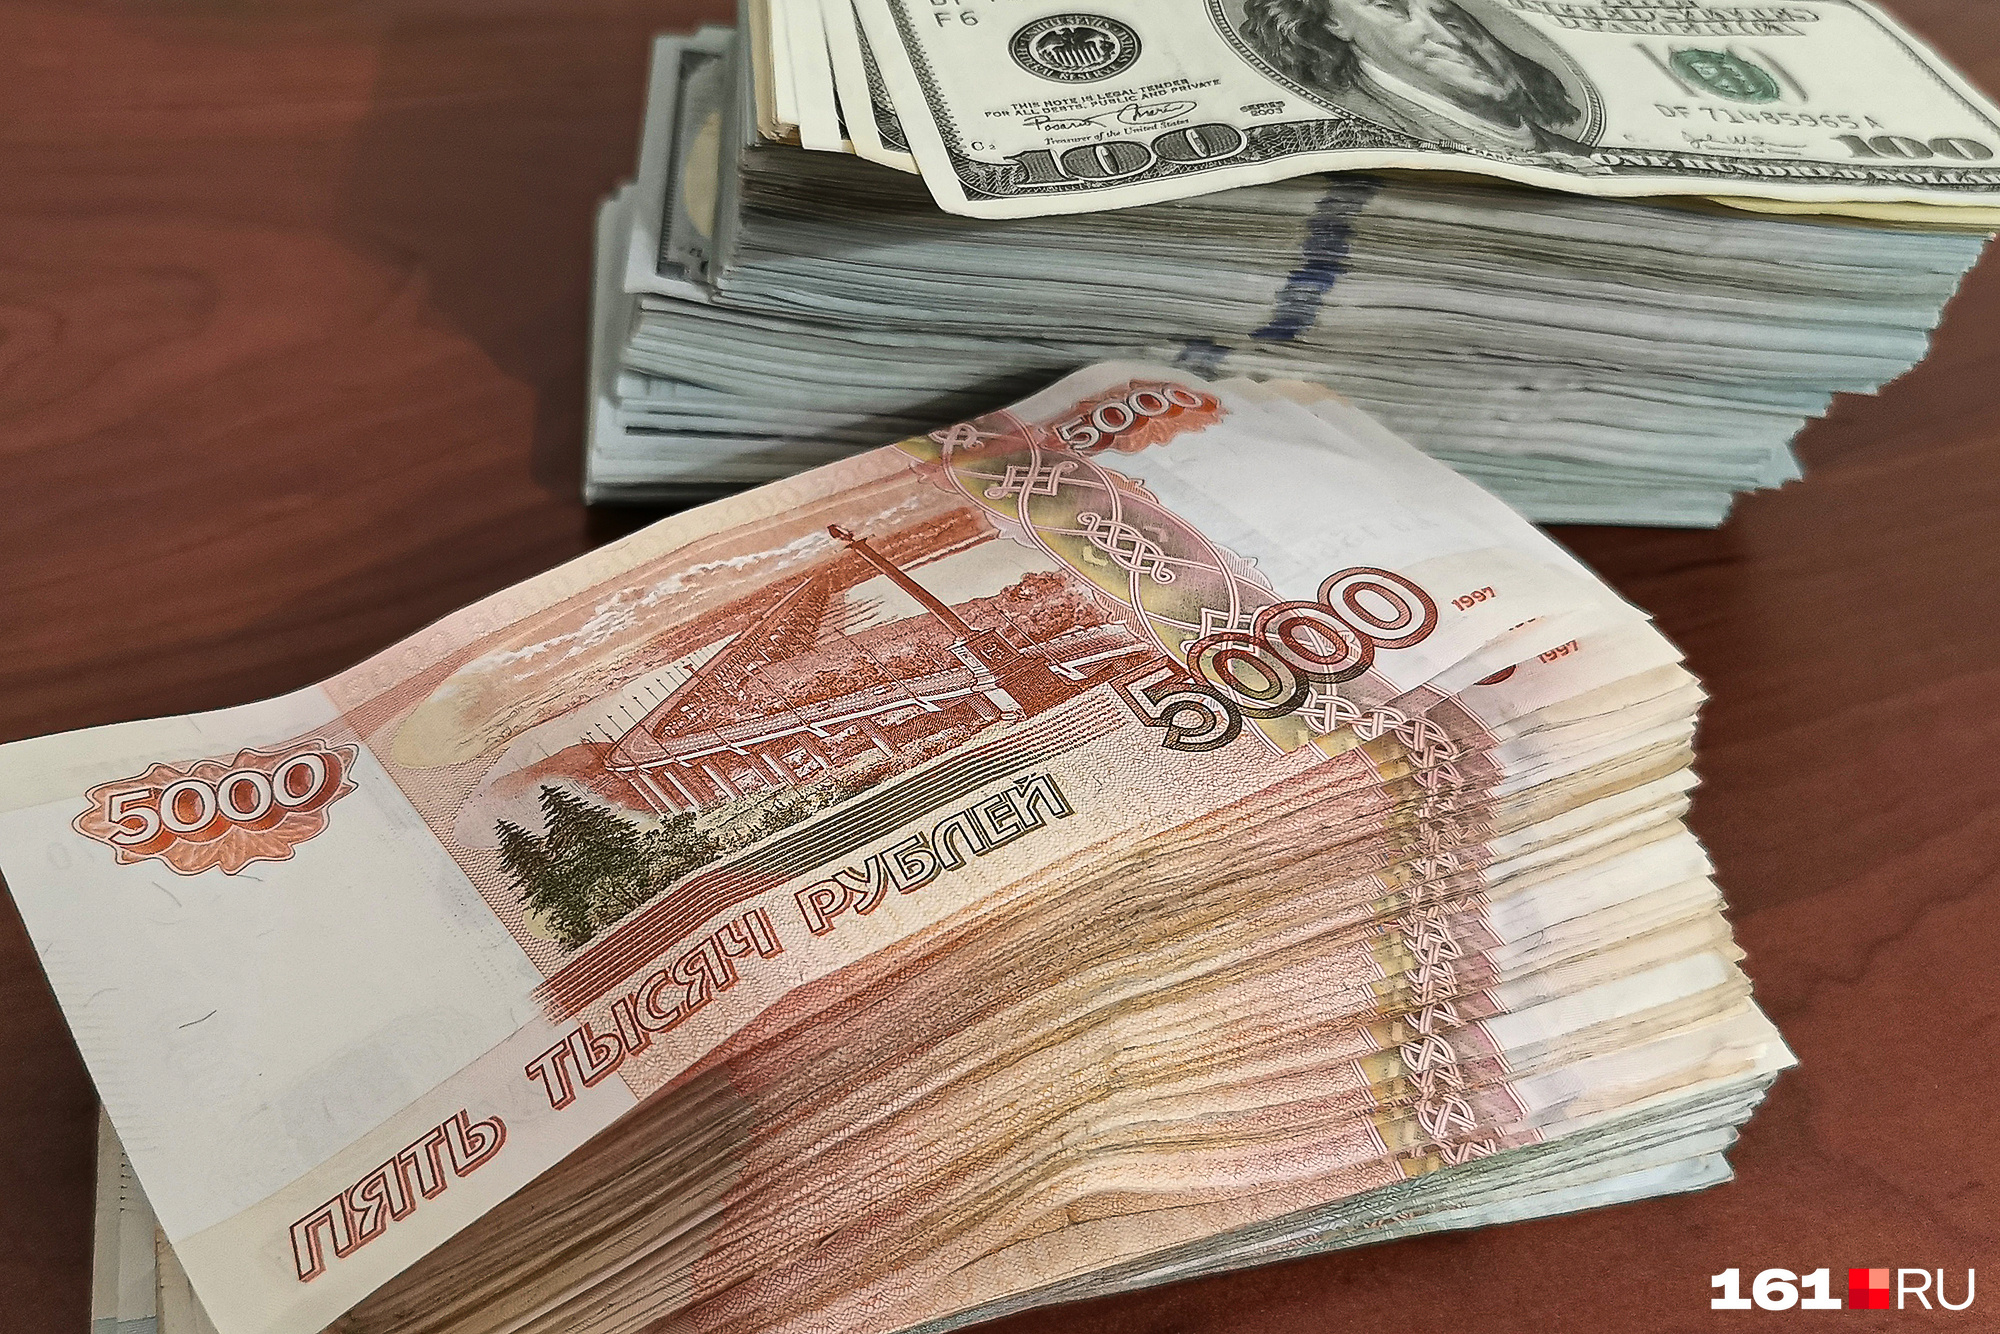 Минфин увеличит объем закупки валюты, а как это скажется на курсе рубля, мы узнаем позже